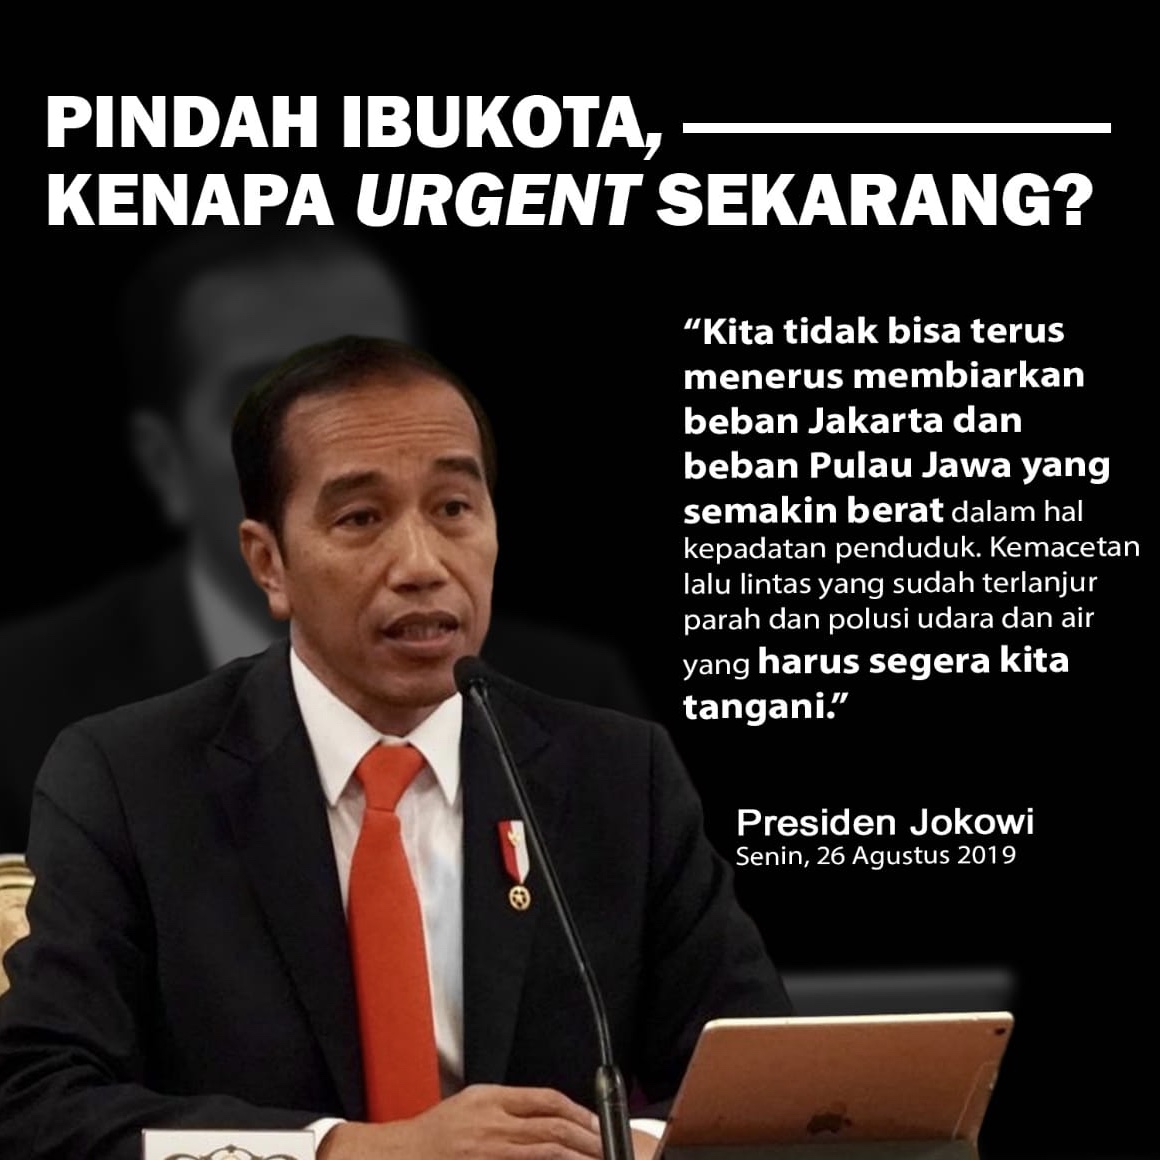 Ini 5 Alasan Jokowi Pilih Kaltim Sebagai Ibu Kota Negara yang Baru